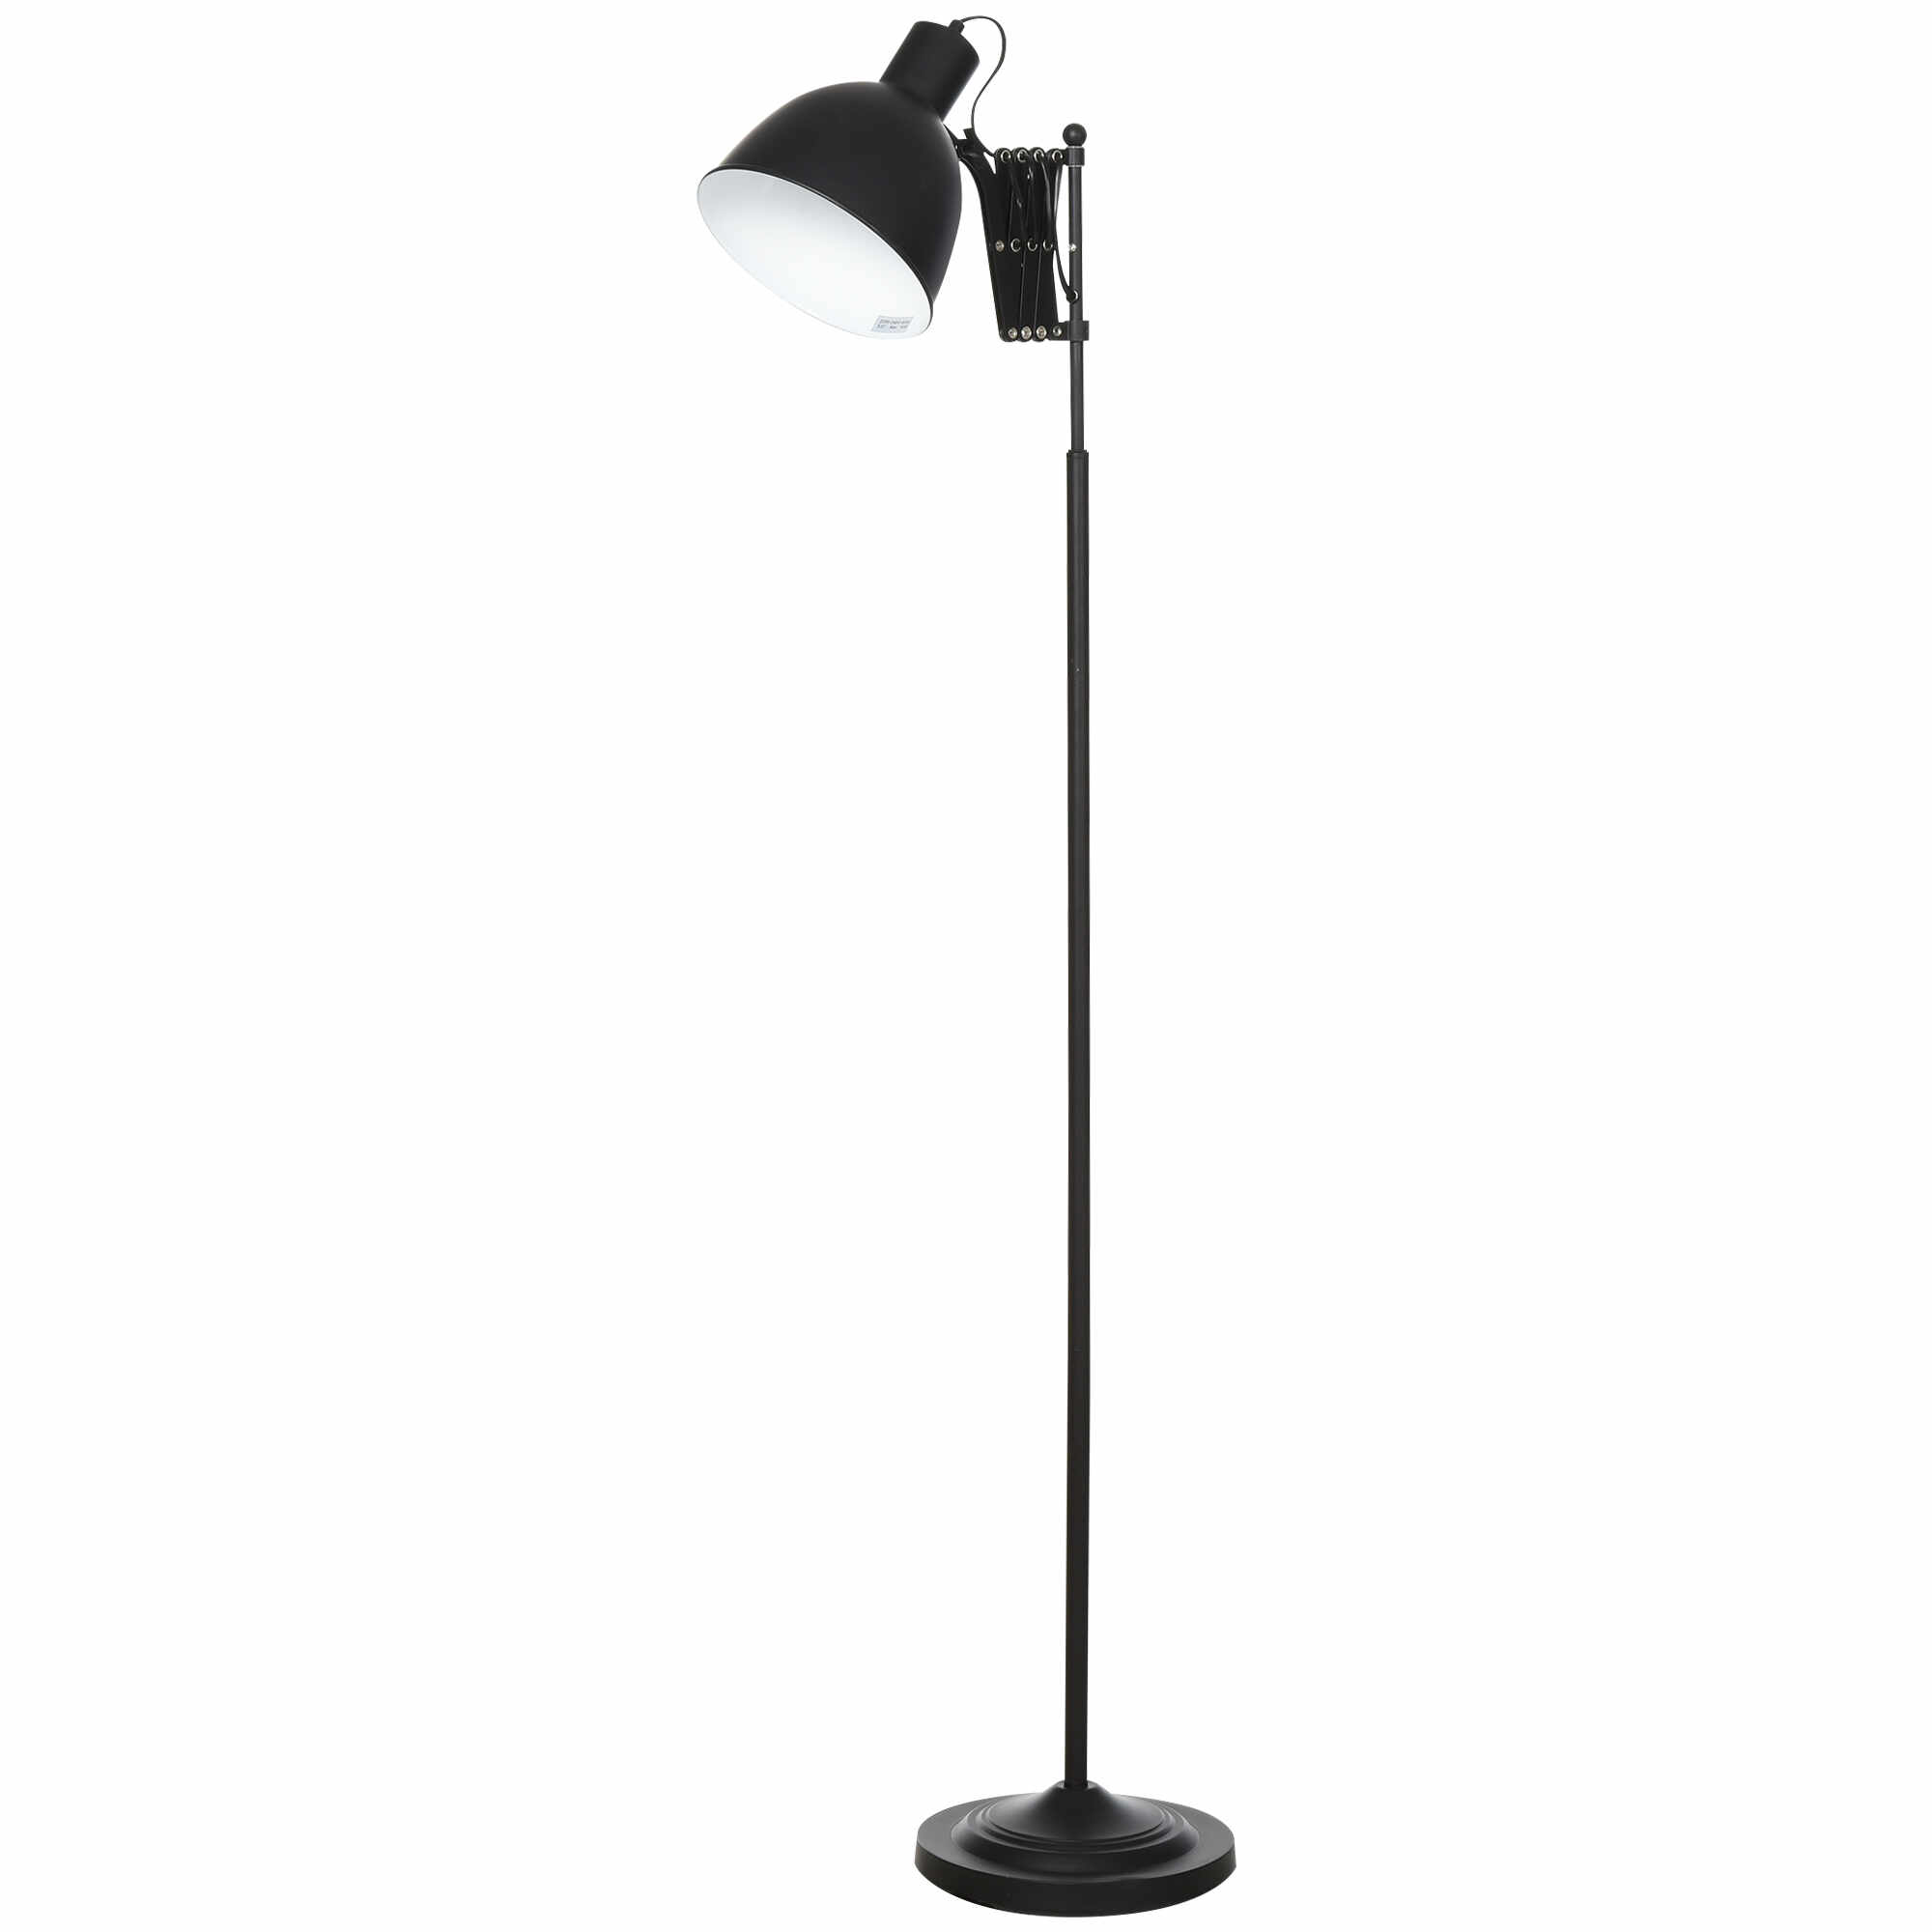 HOMCOM Lampa de podea de 140 cm cu Abajur si Brat Reglabil, baza rotunda, comutator cu pedala, metal, negru